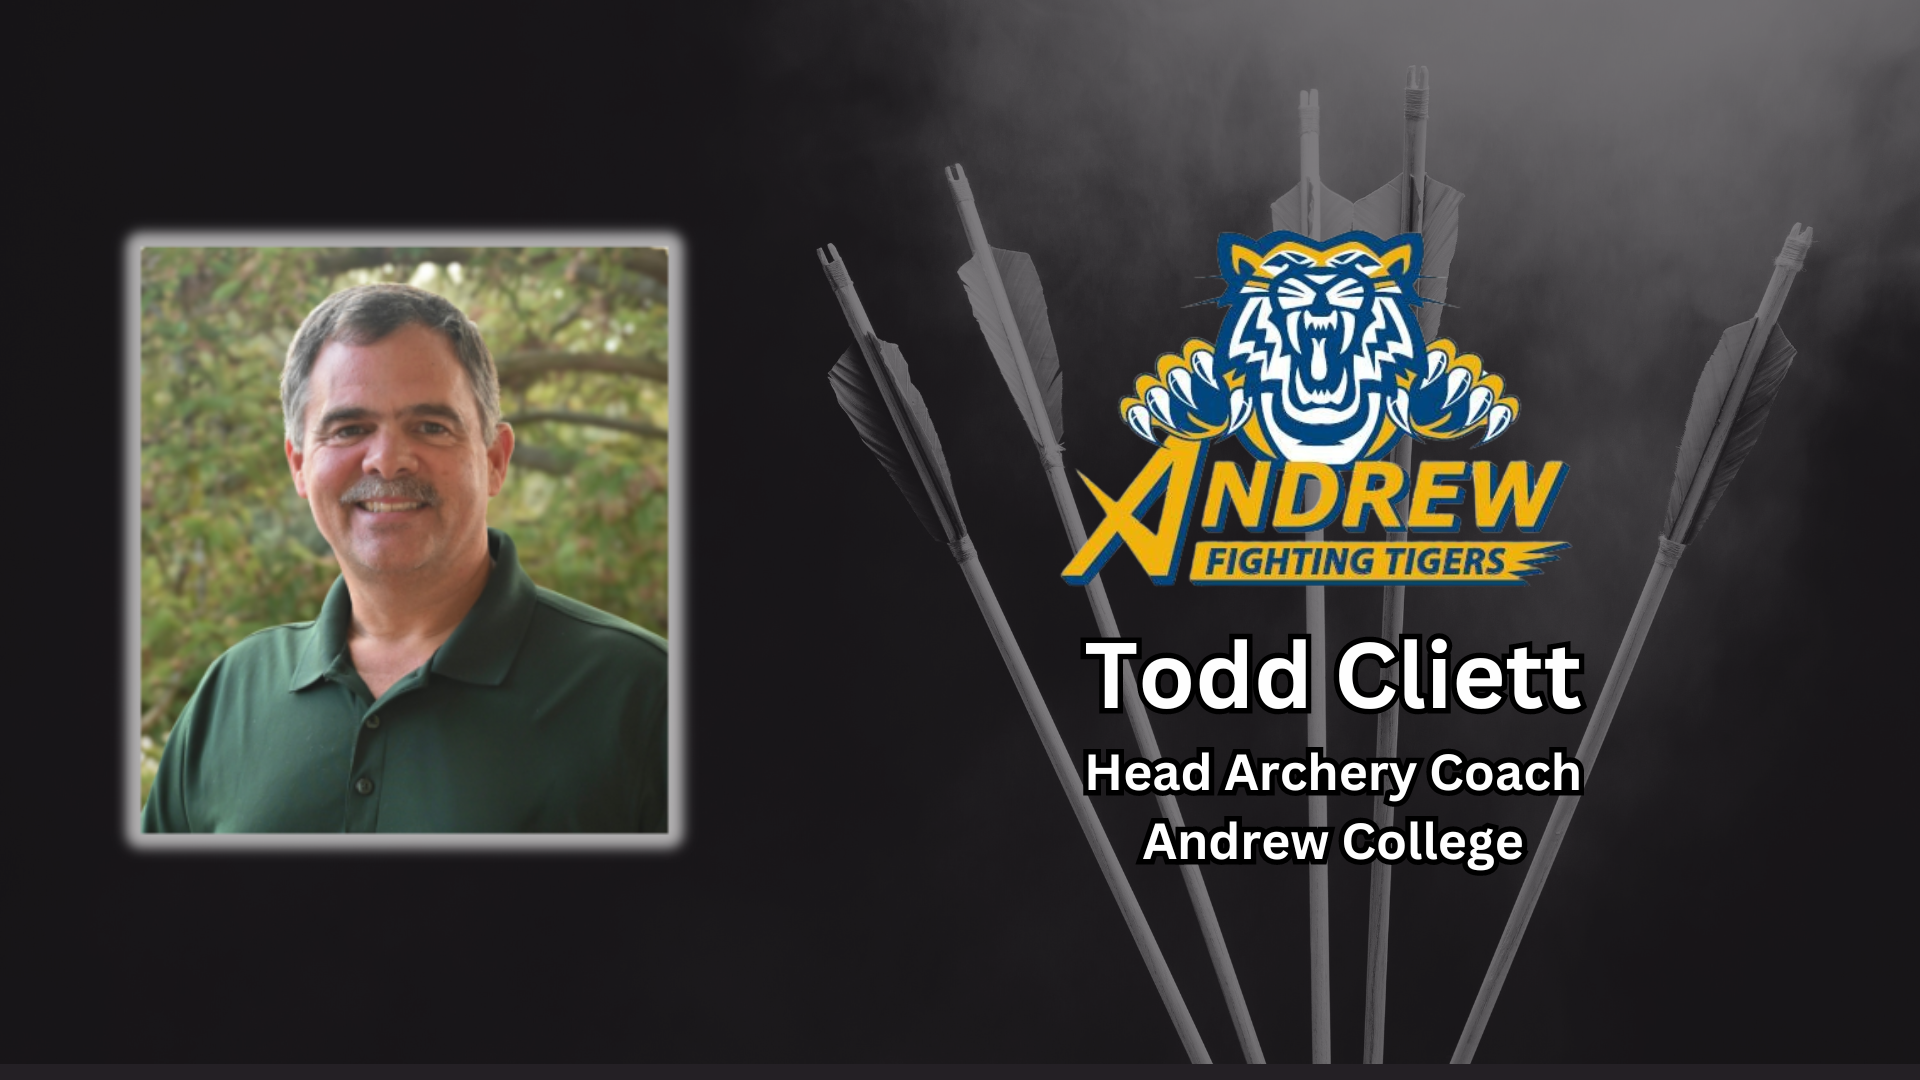 Andrew College Adds Intercollegiate Archery